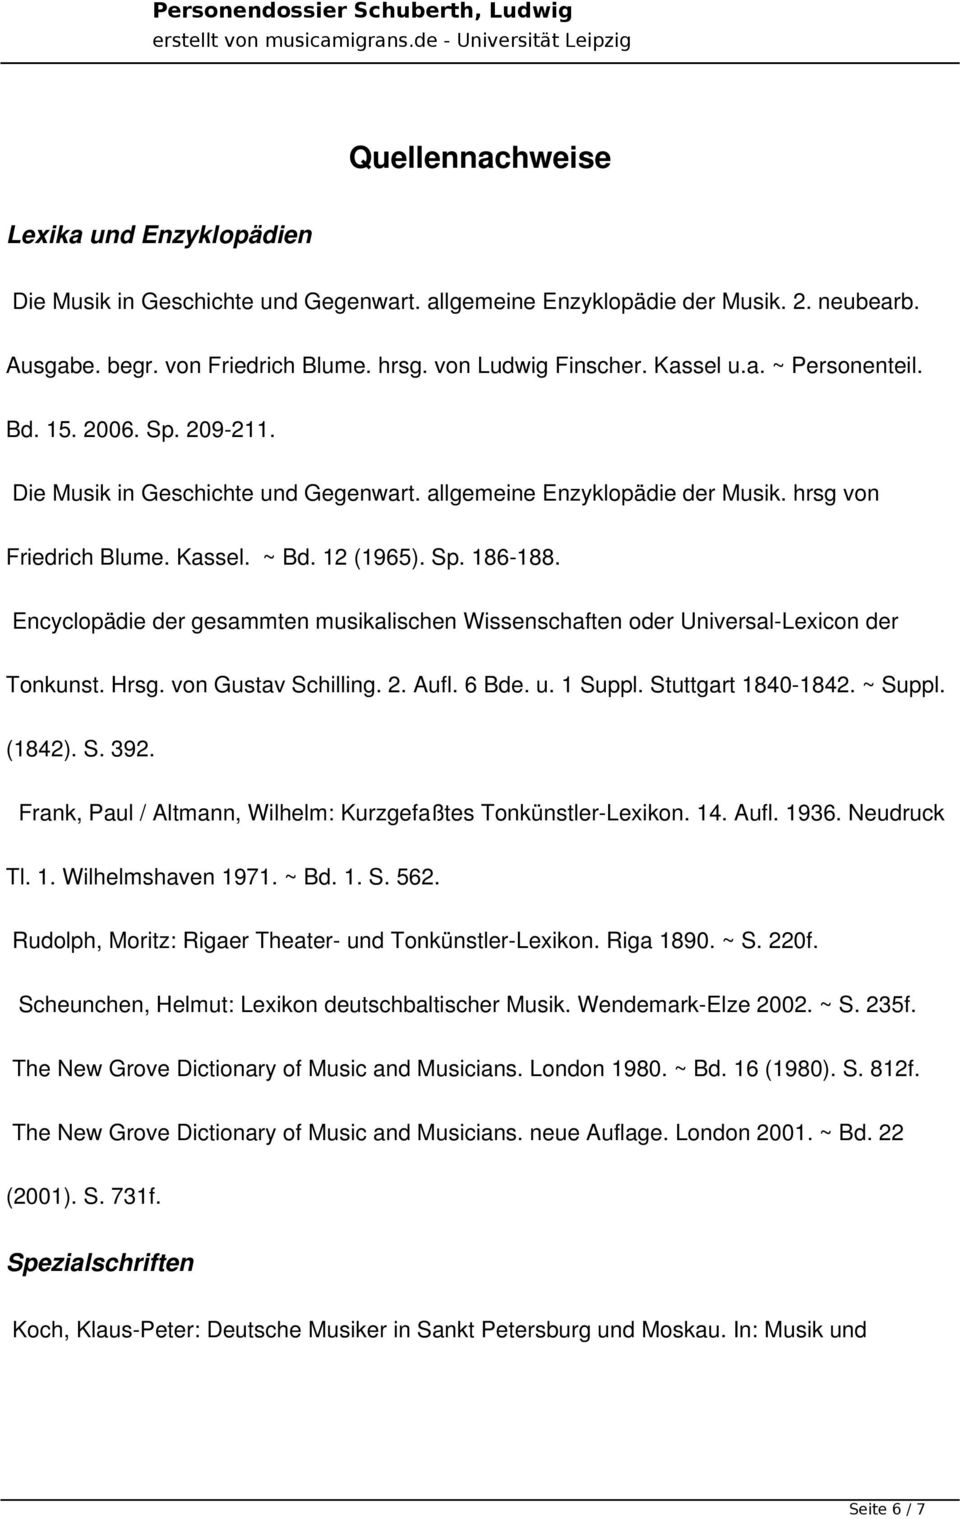 Encyclopädie der gesammten musikalischen Wissenschaften oder Universal-Lexicon der Tonkunst. Hrsg. von Gustav Schilling. 2. Aufl. 6 Bde. u. 1 Suppl. Stuttgart 1840-1842. ~ Suppl. (1842). S. 392.